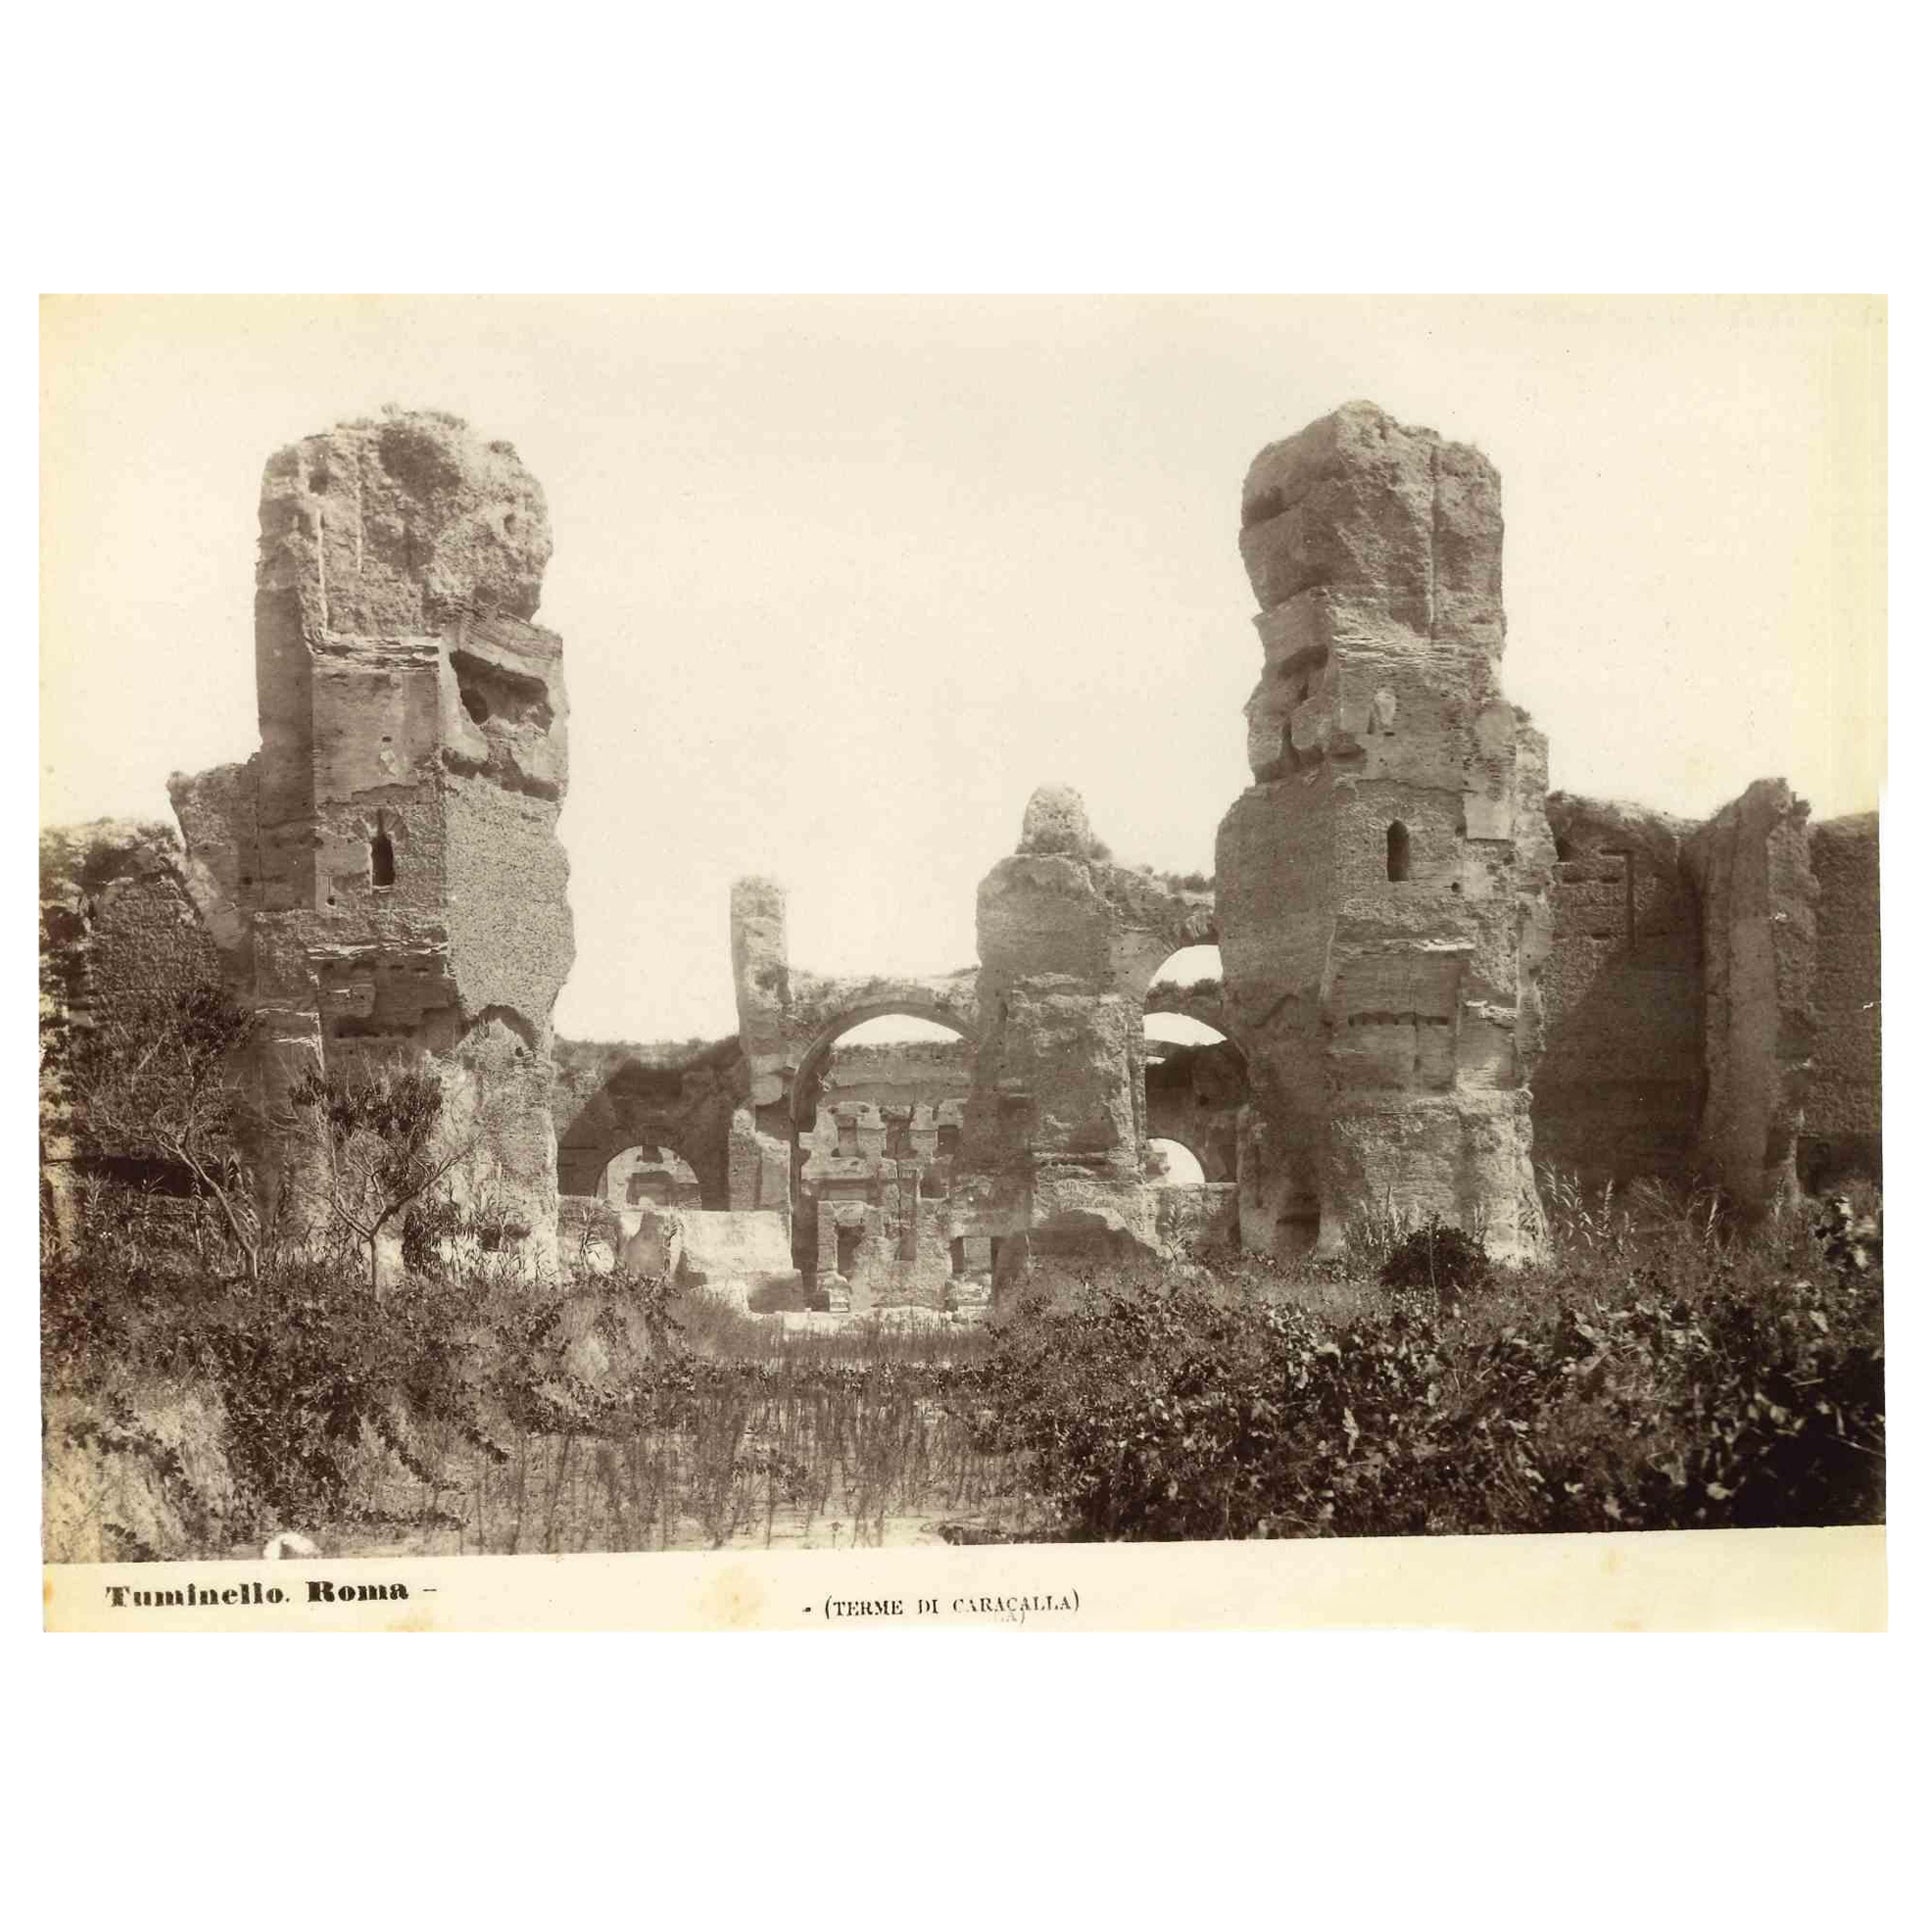 Bagues de Caracalla - Photo vintage de Ludovico Tuminello - Début du 20e siècle